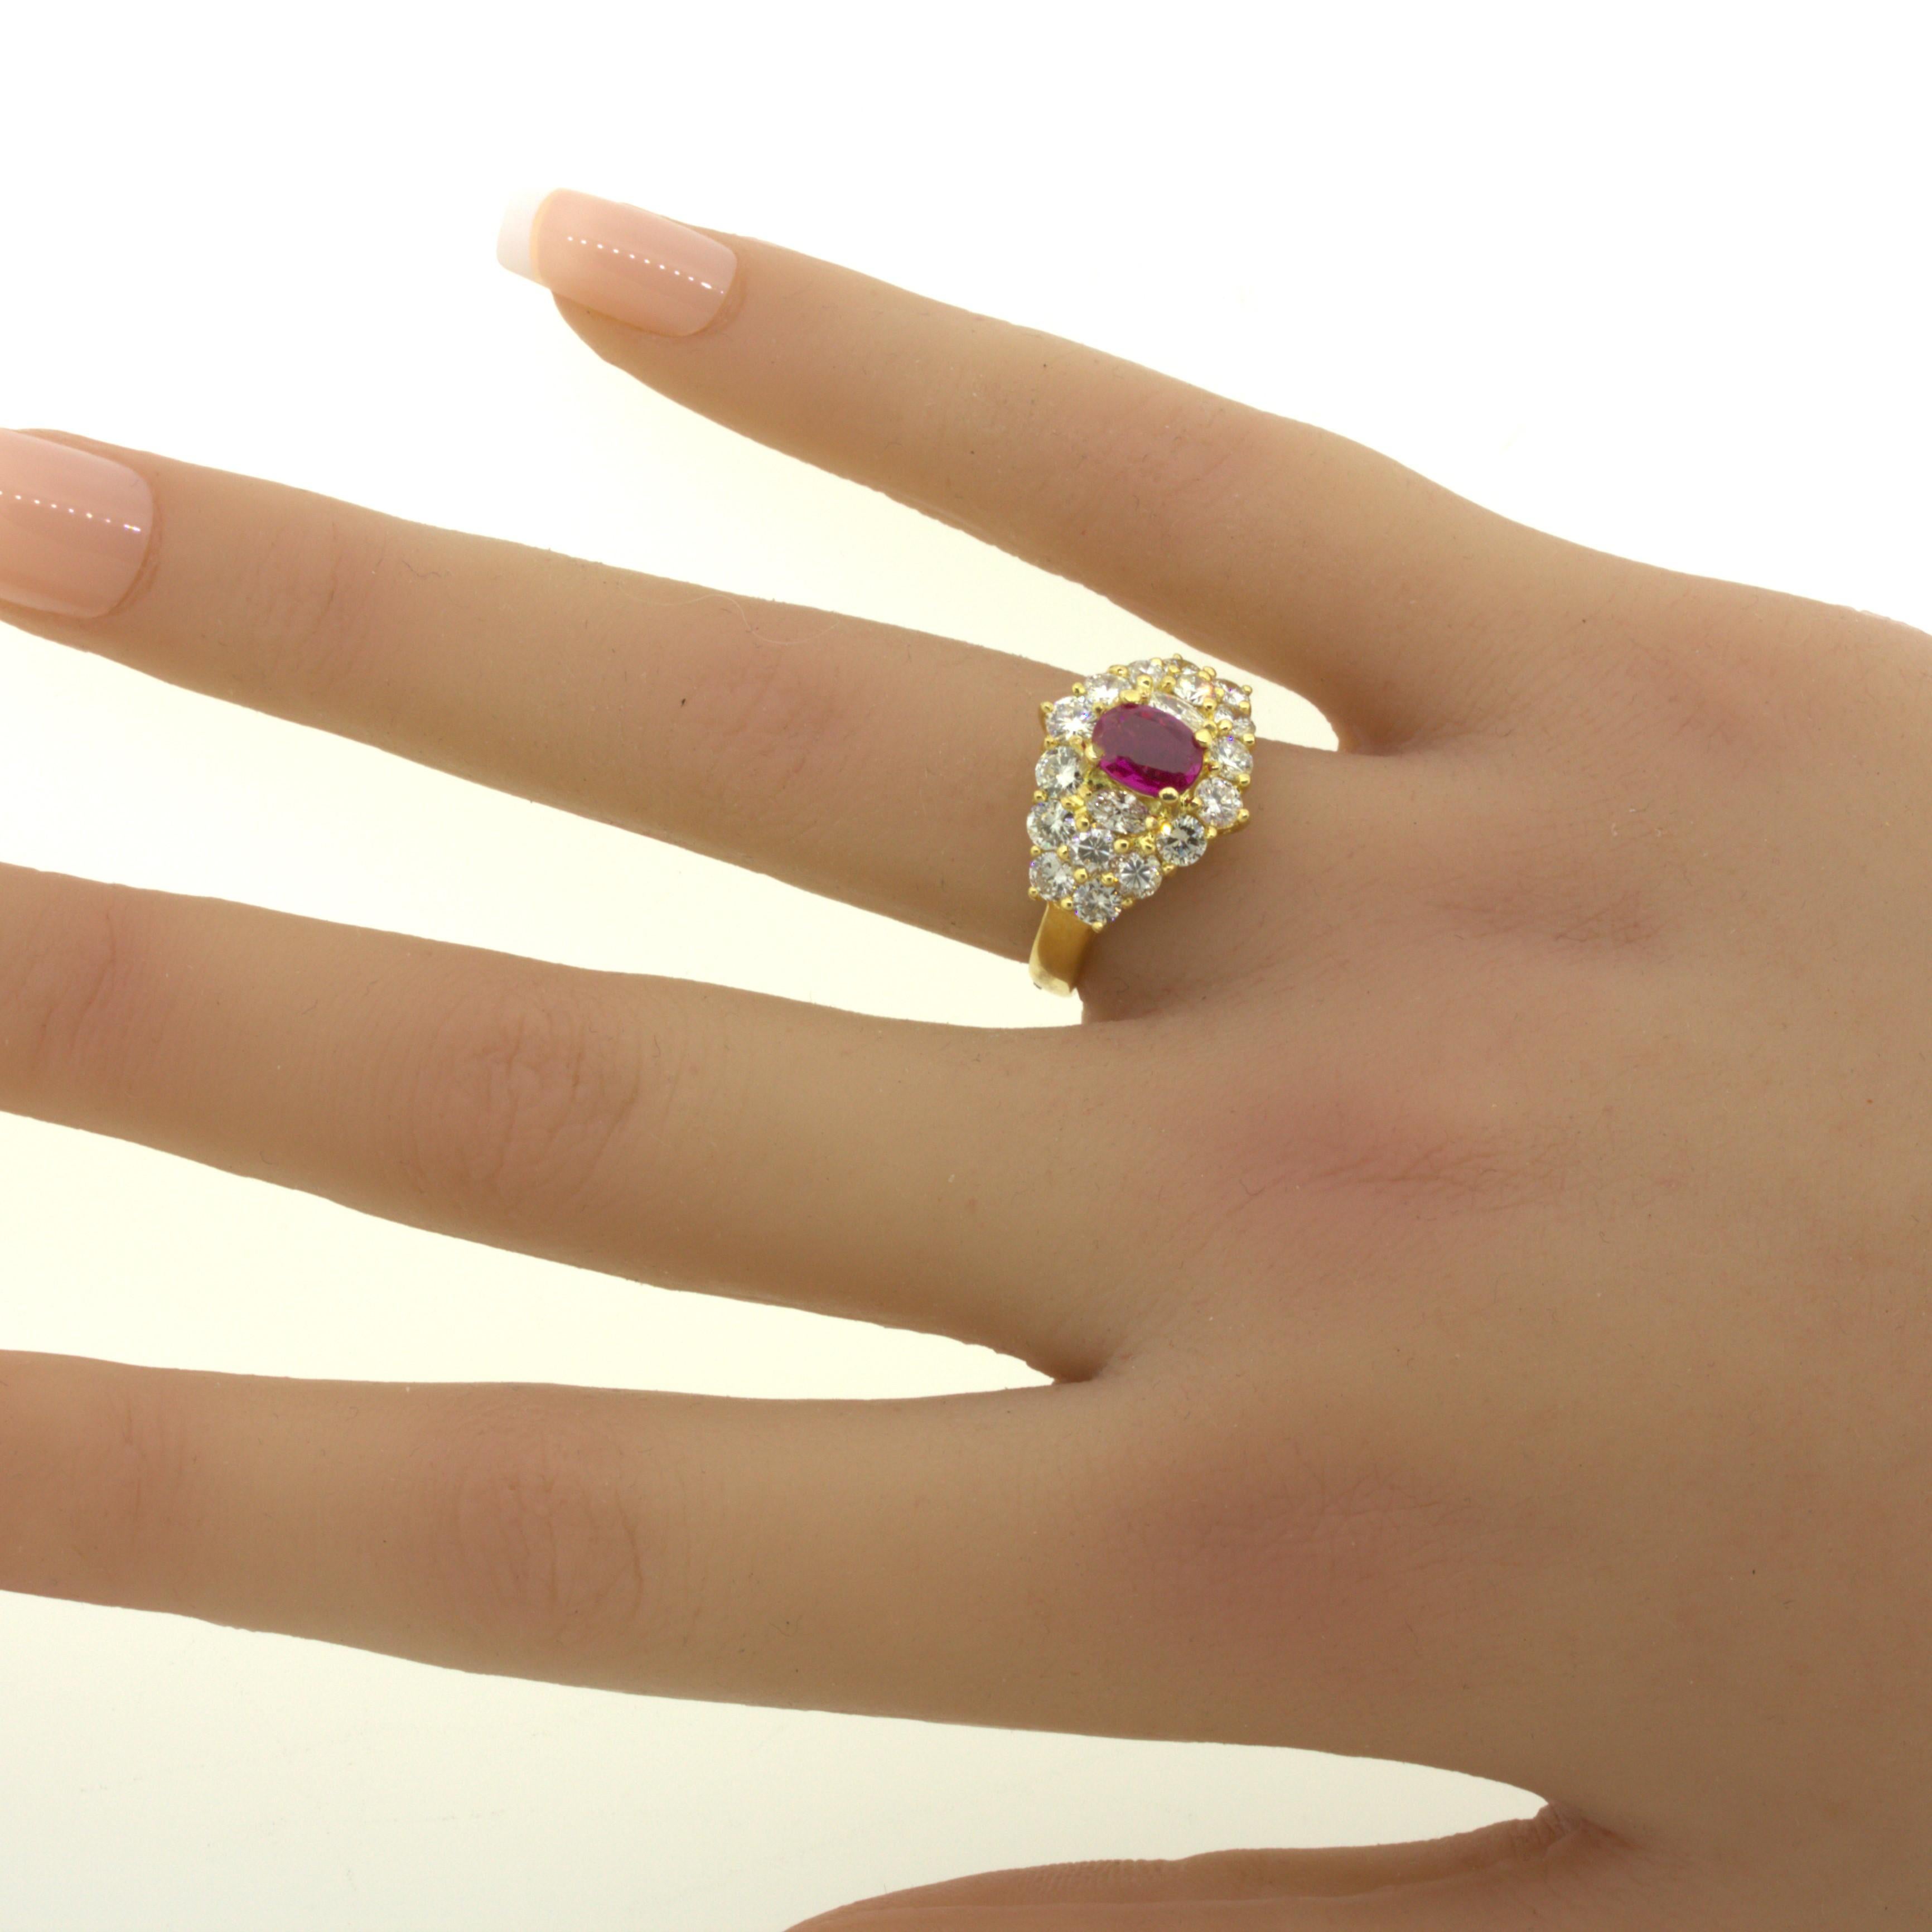 1.09 Carat Burma No-Heat Ruby Diamond 18K Yellow Gold Ring, GIA Certified For Sale 7